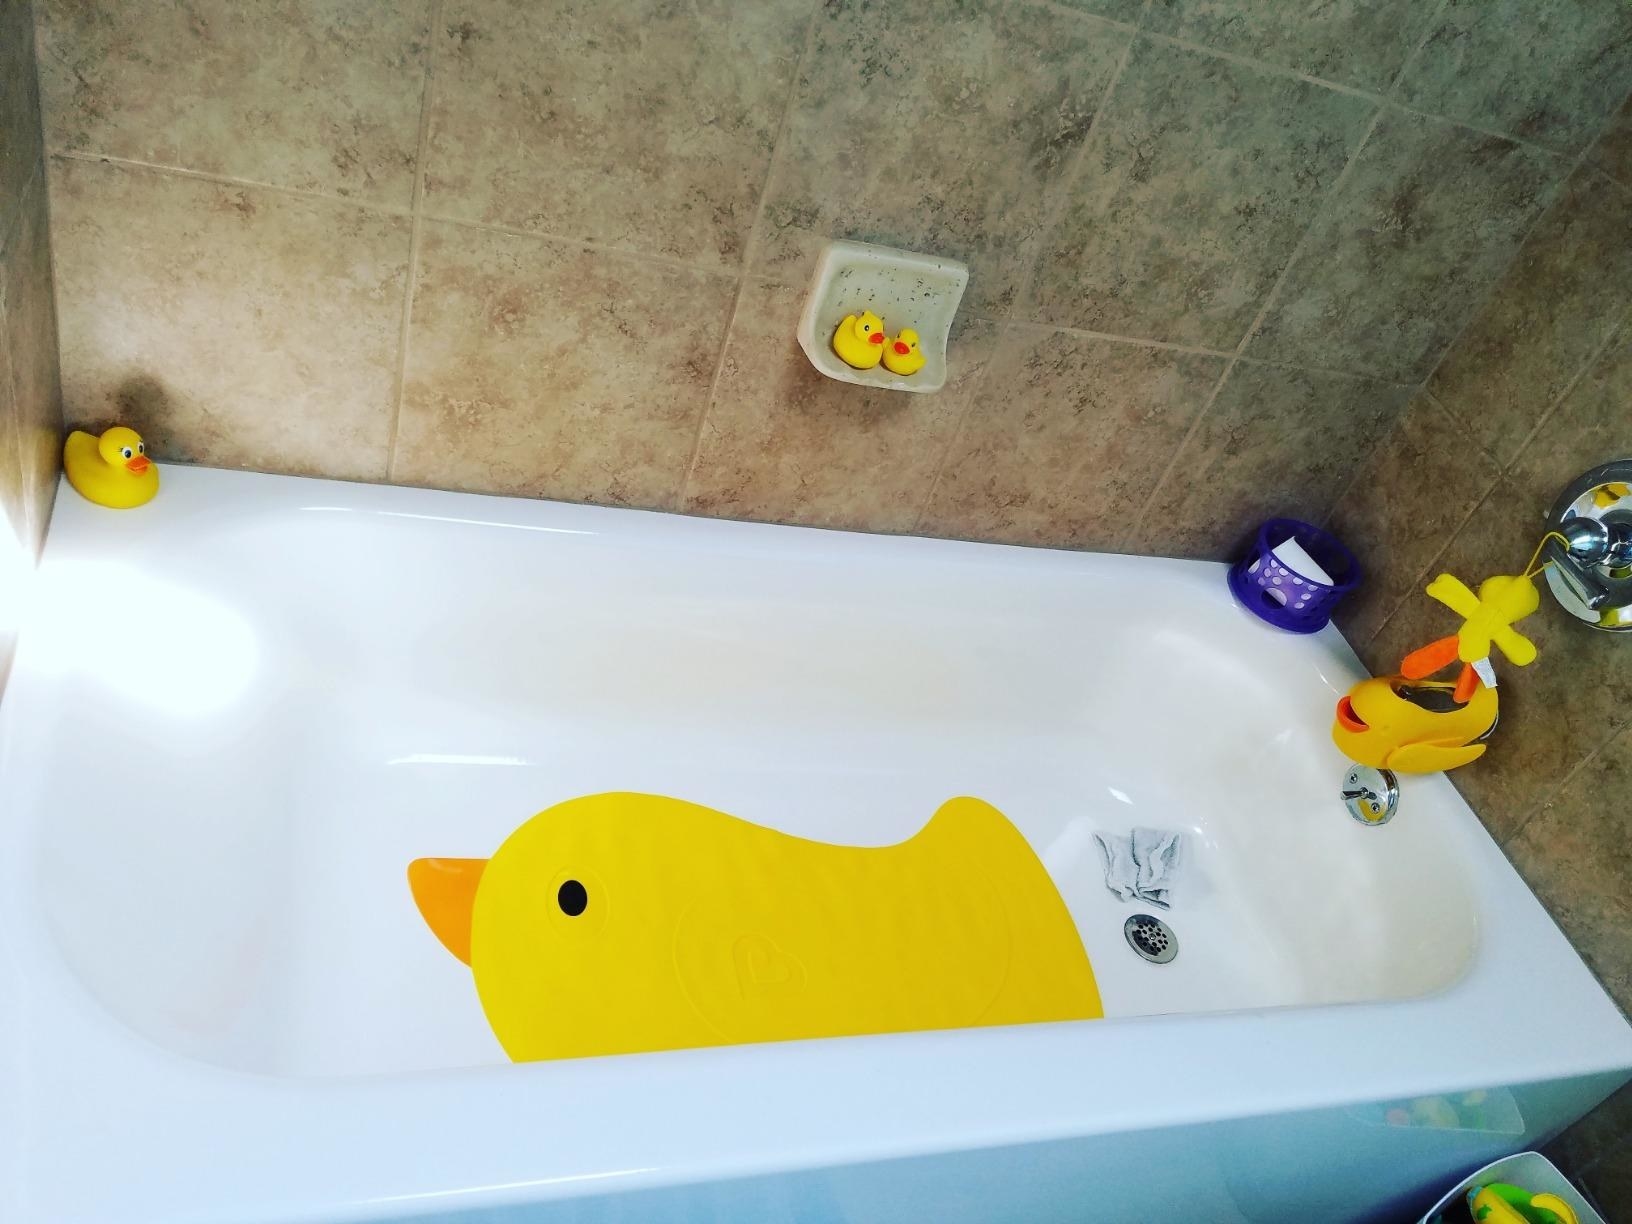 the duck bath mat in a bathtub